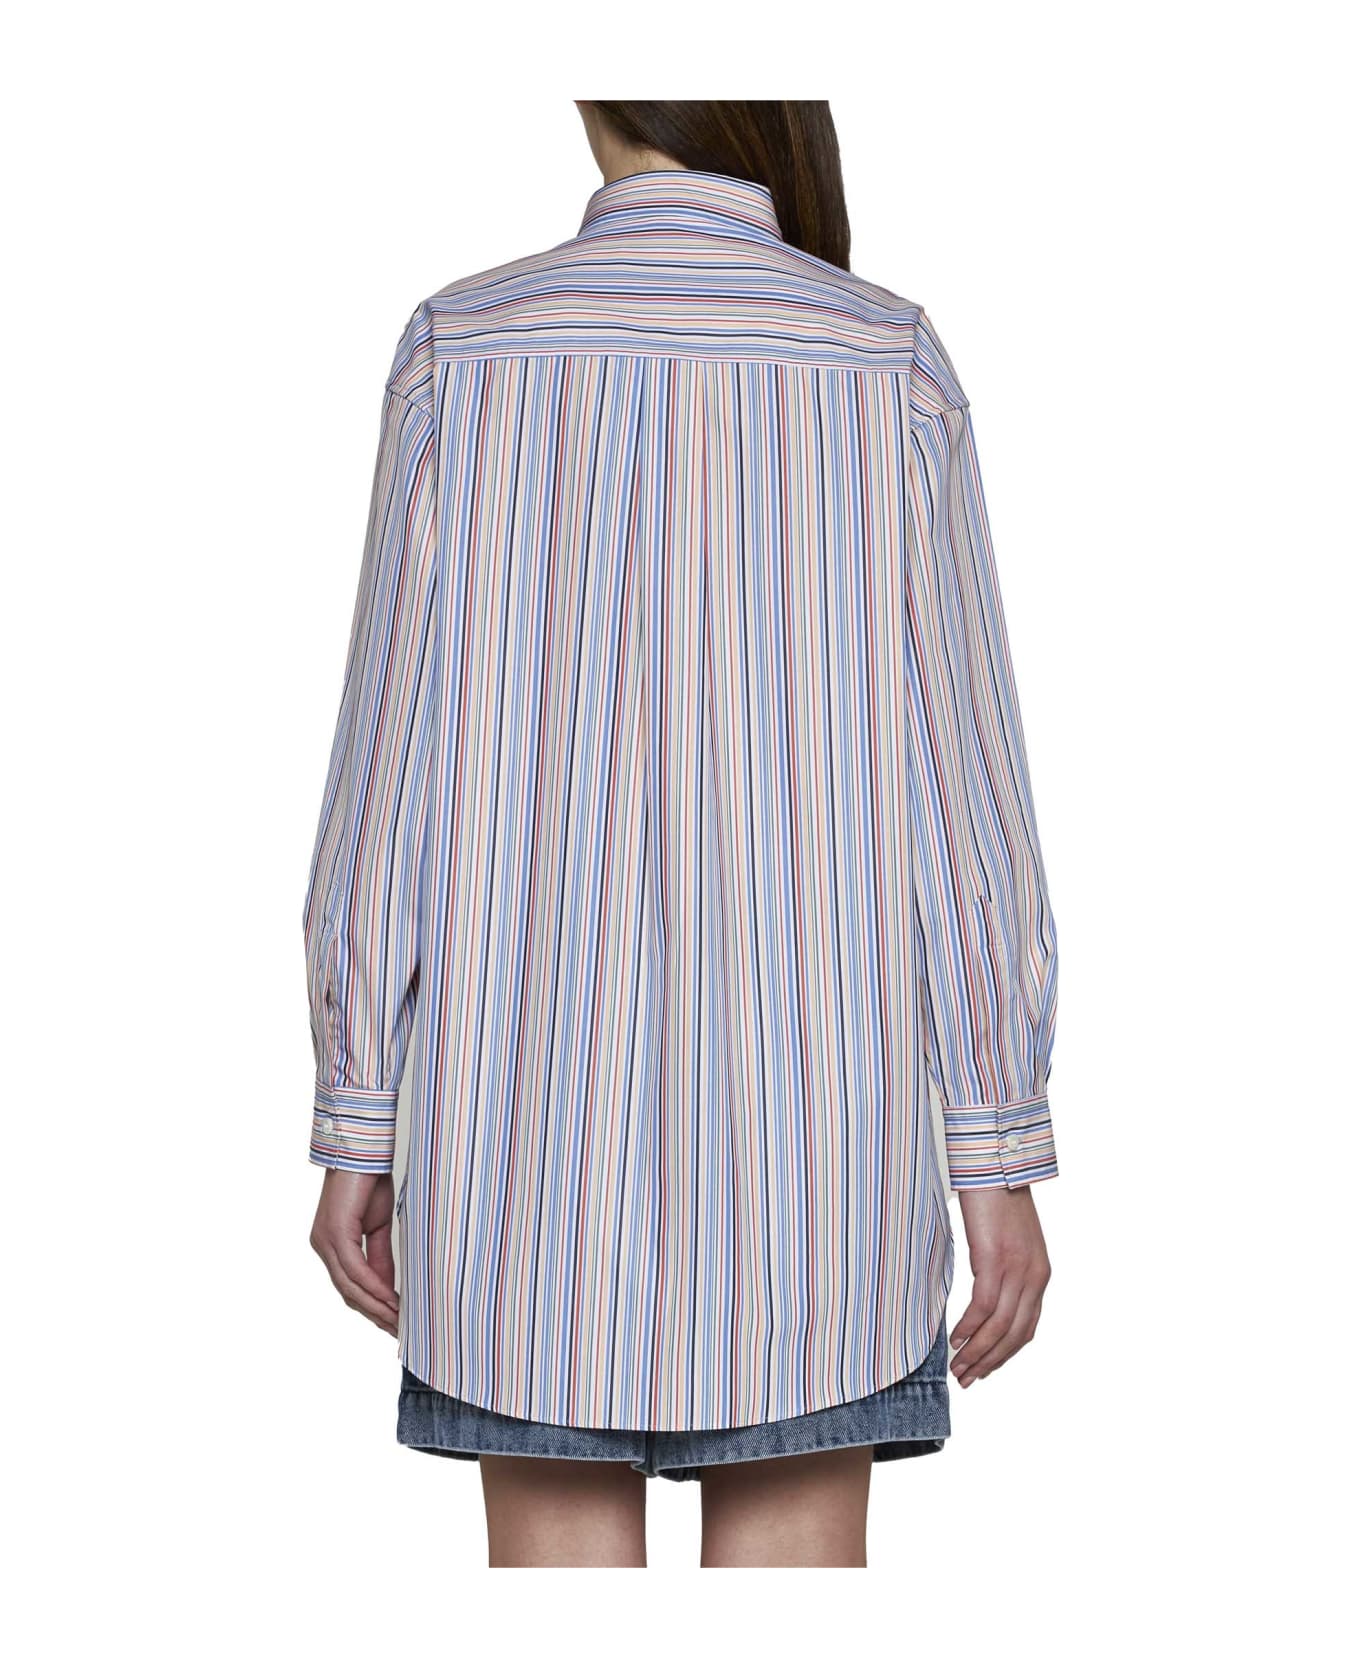 Etro Striped Button-up Shirt - Rigato シャツ